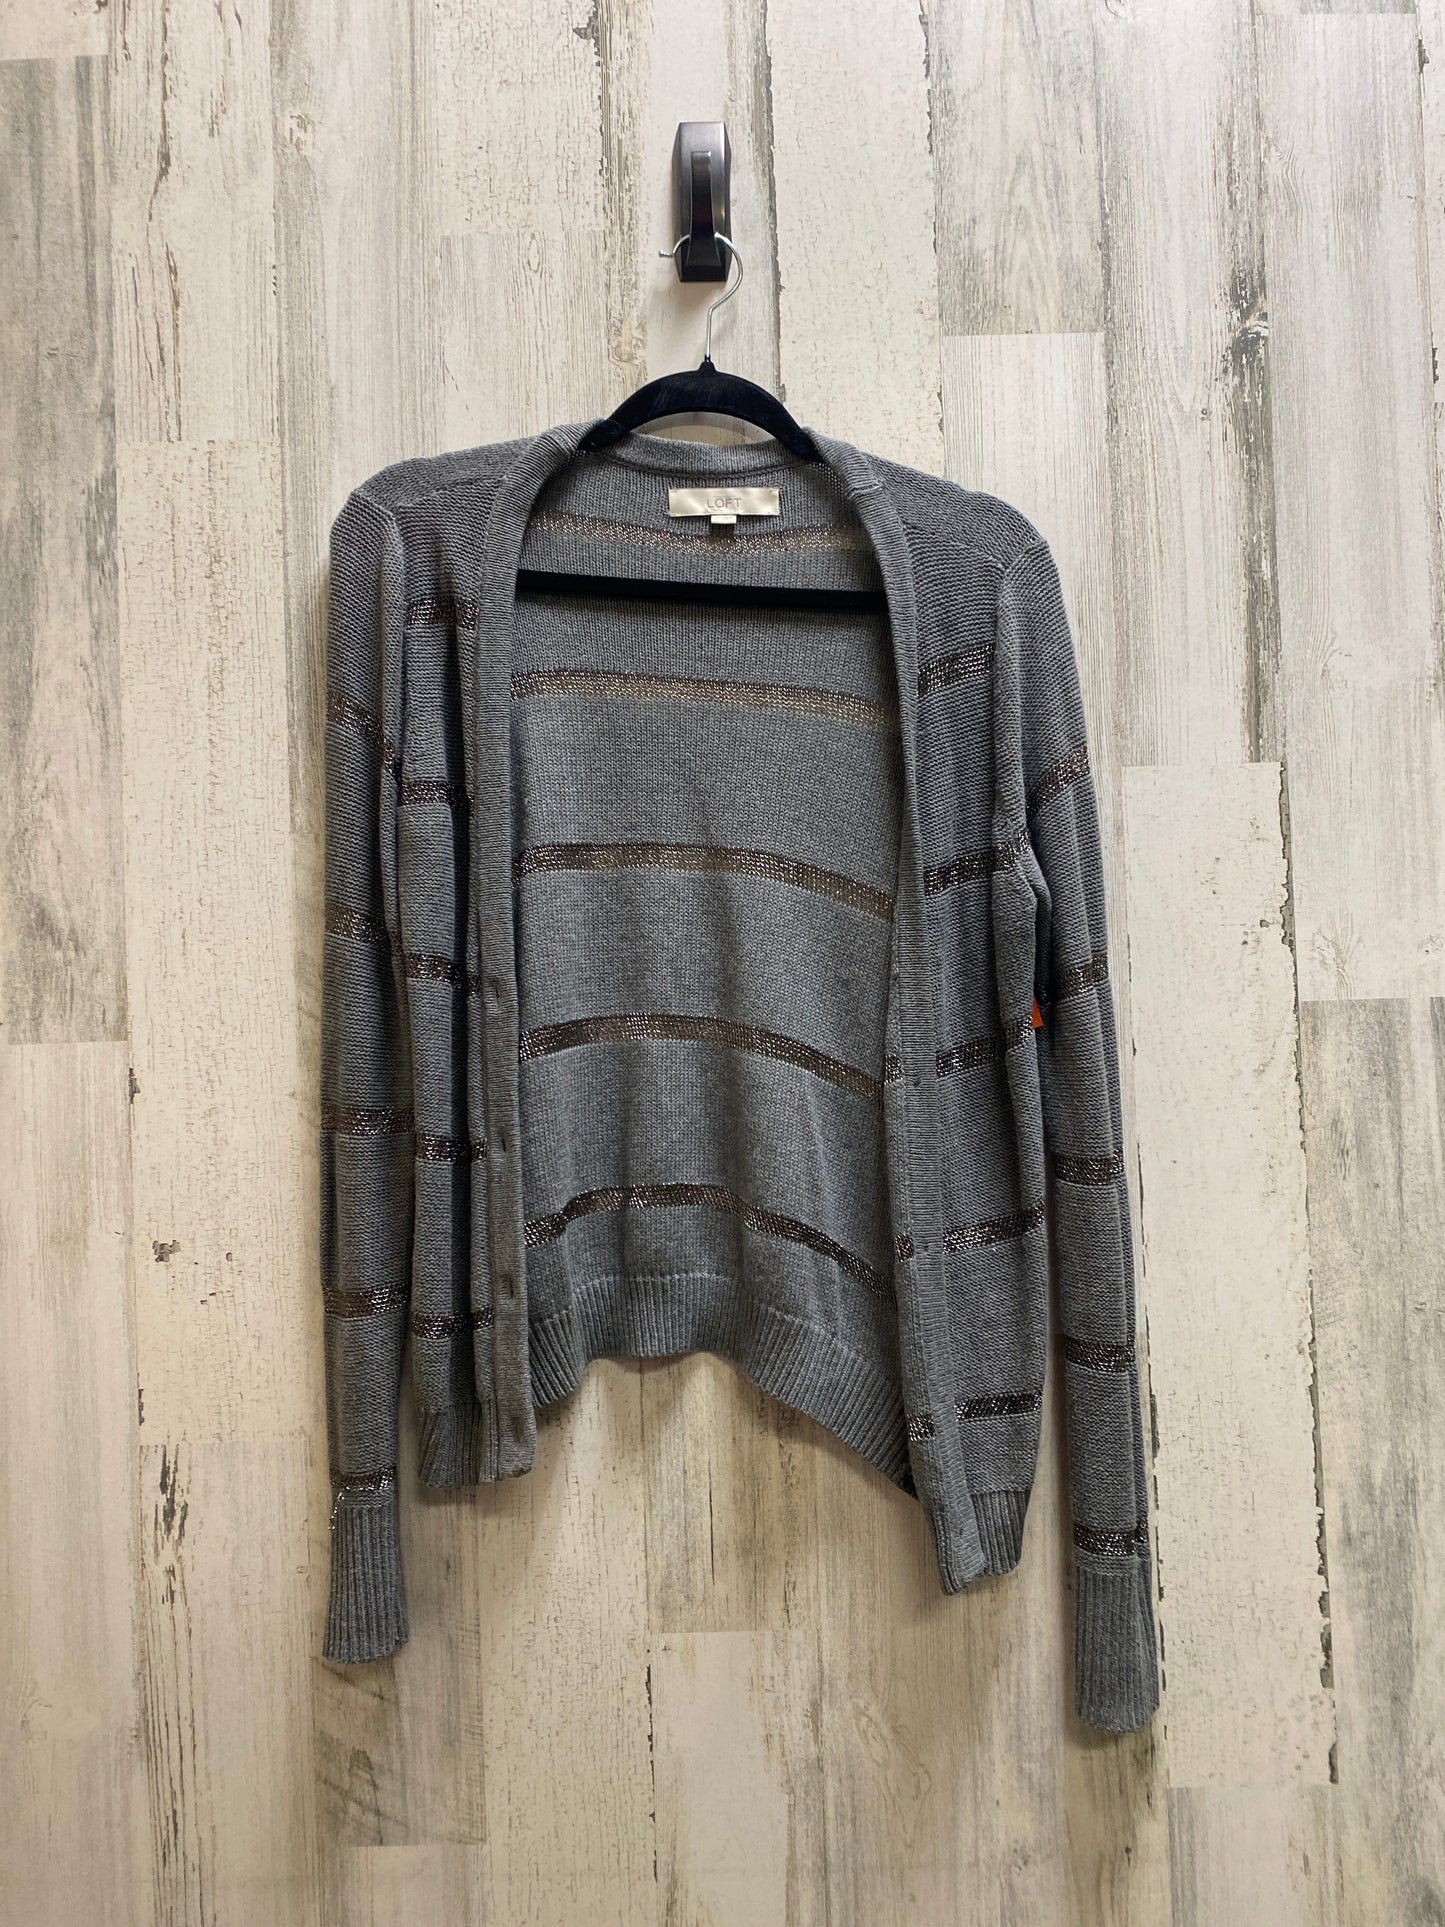 Sweater By Loft  Size: M